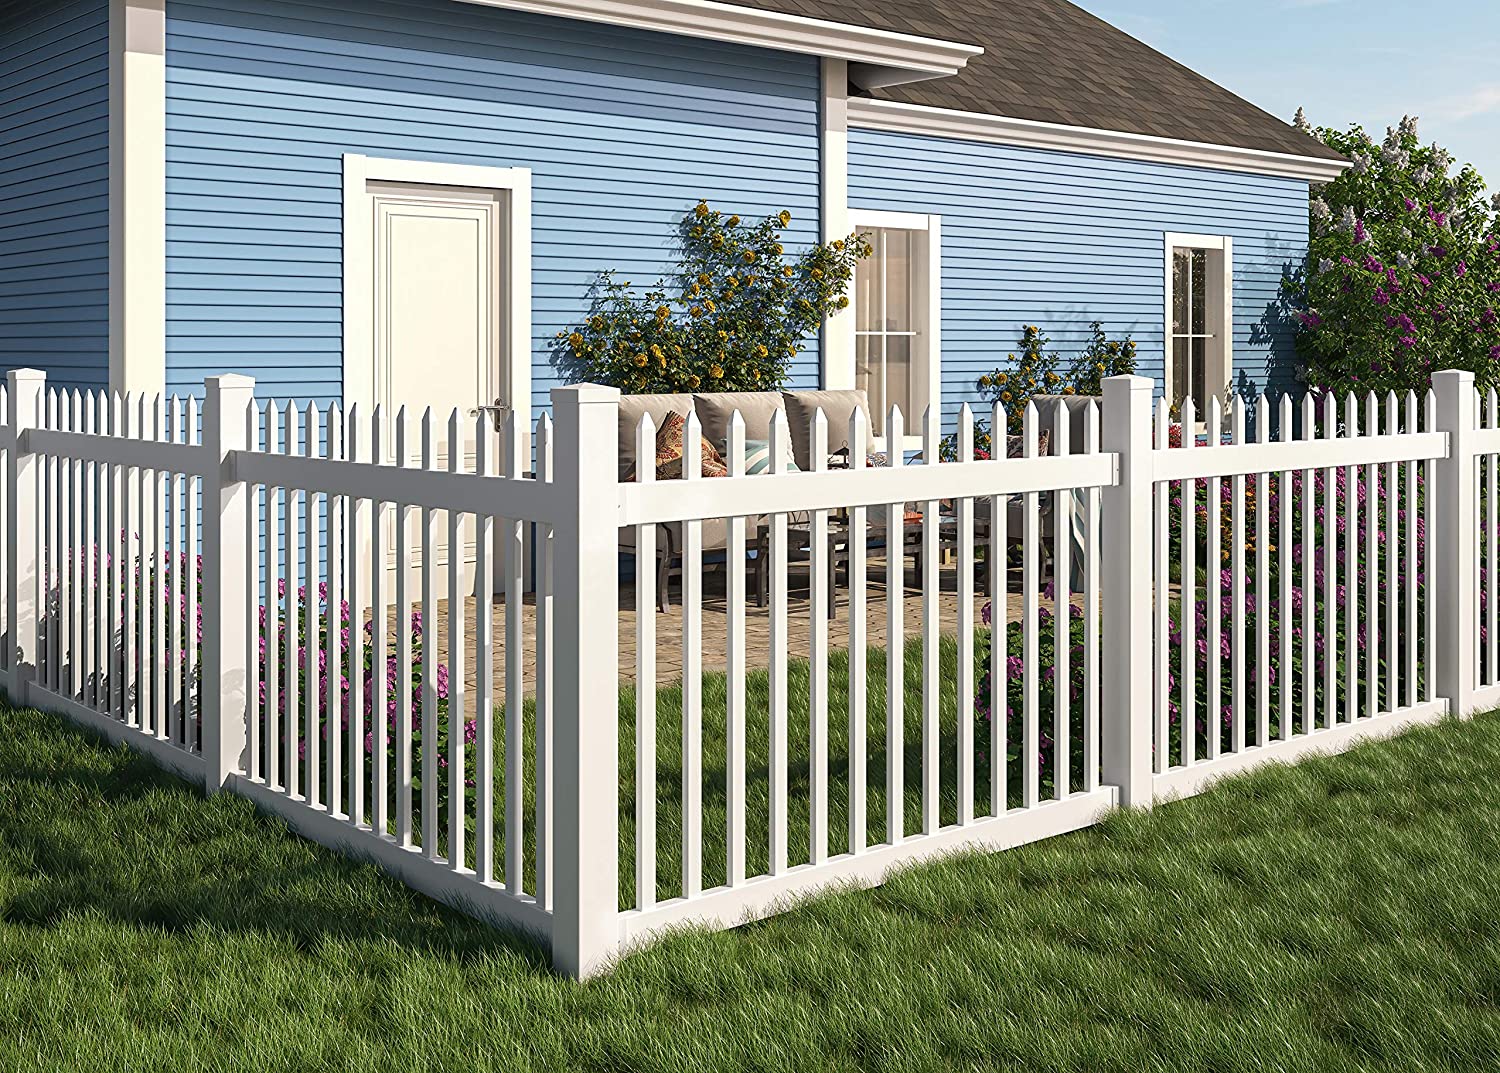 Thiết kế hàng rào đẹp cho sân vườn